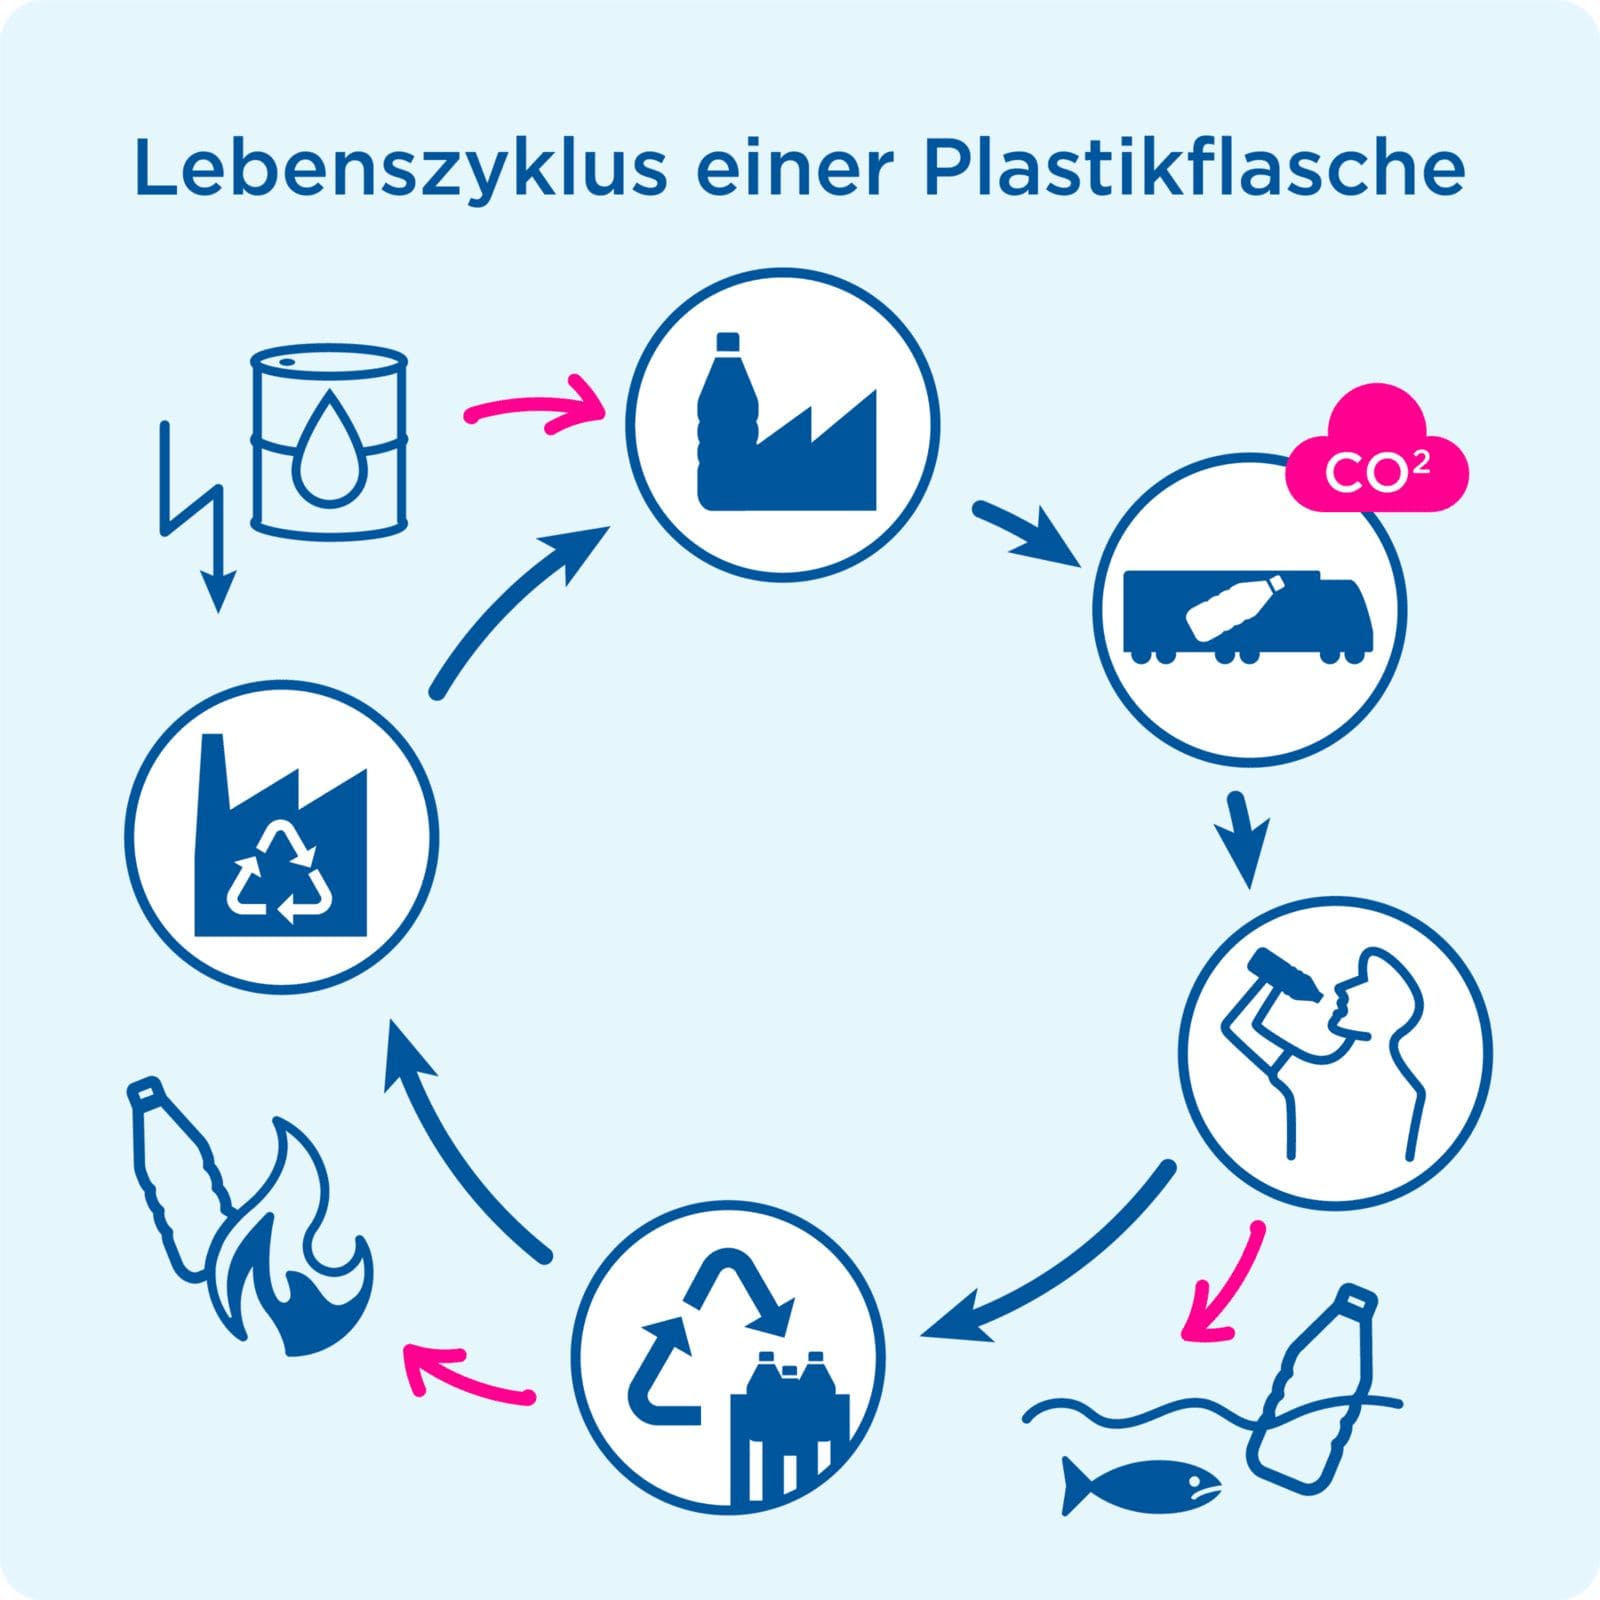 Lebenszyklus einer Plastikflasche